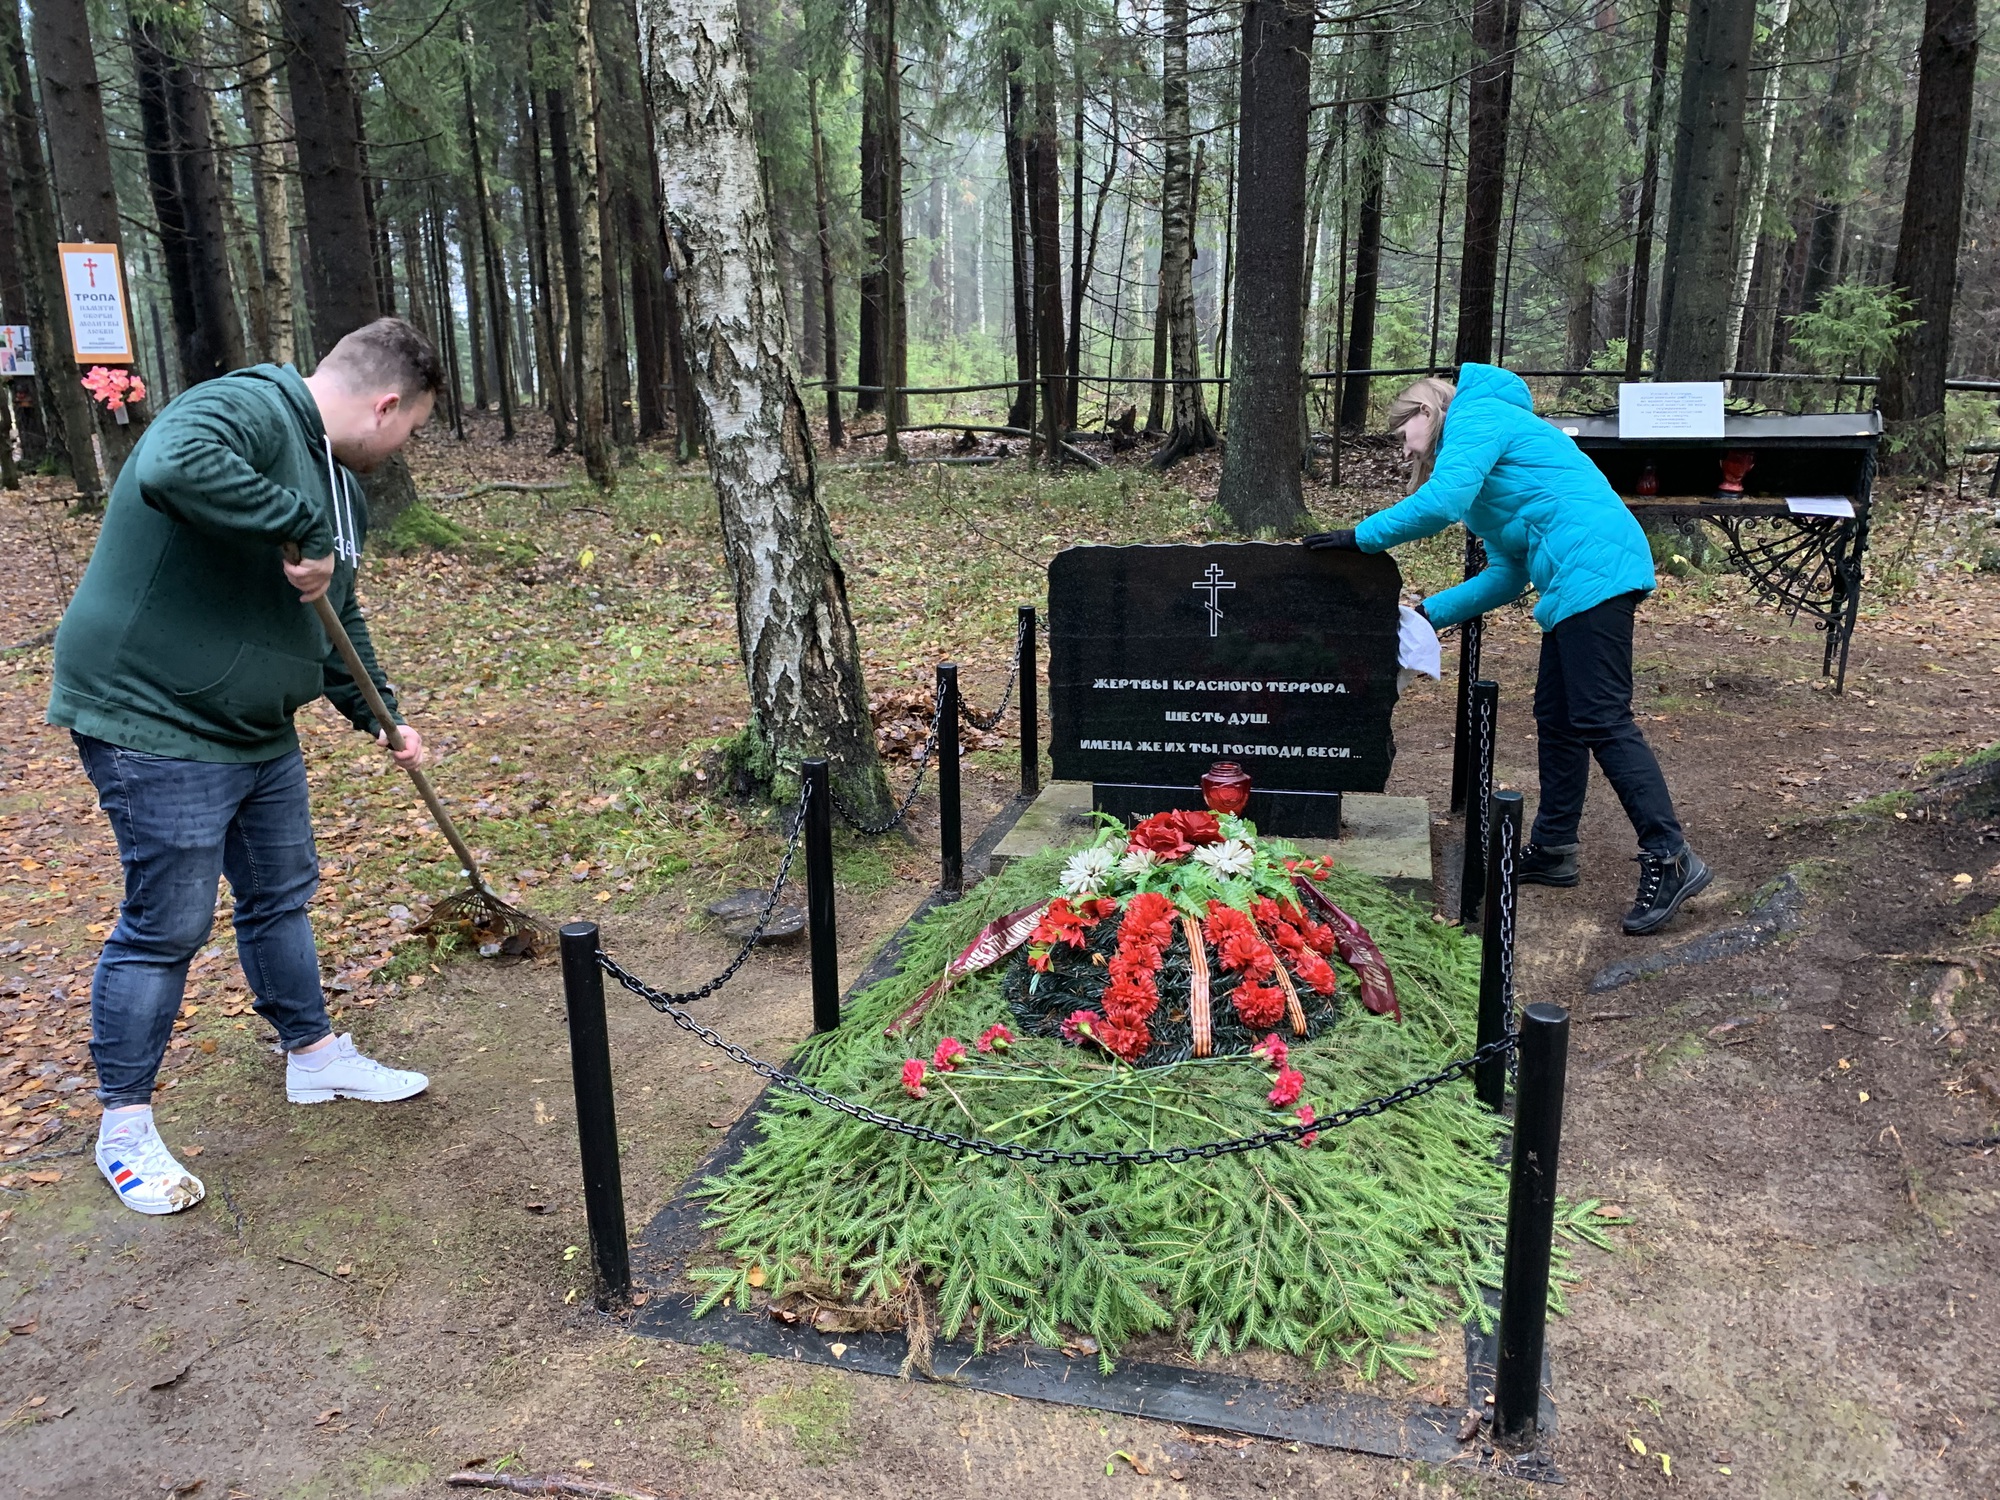 Сотрудники аппарата привели в порядок территорию памятного места в Ковалевском лесу